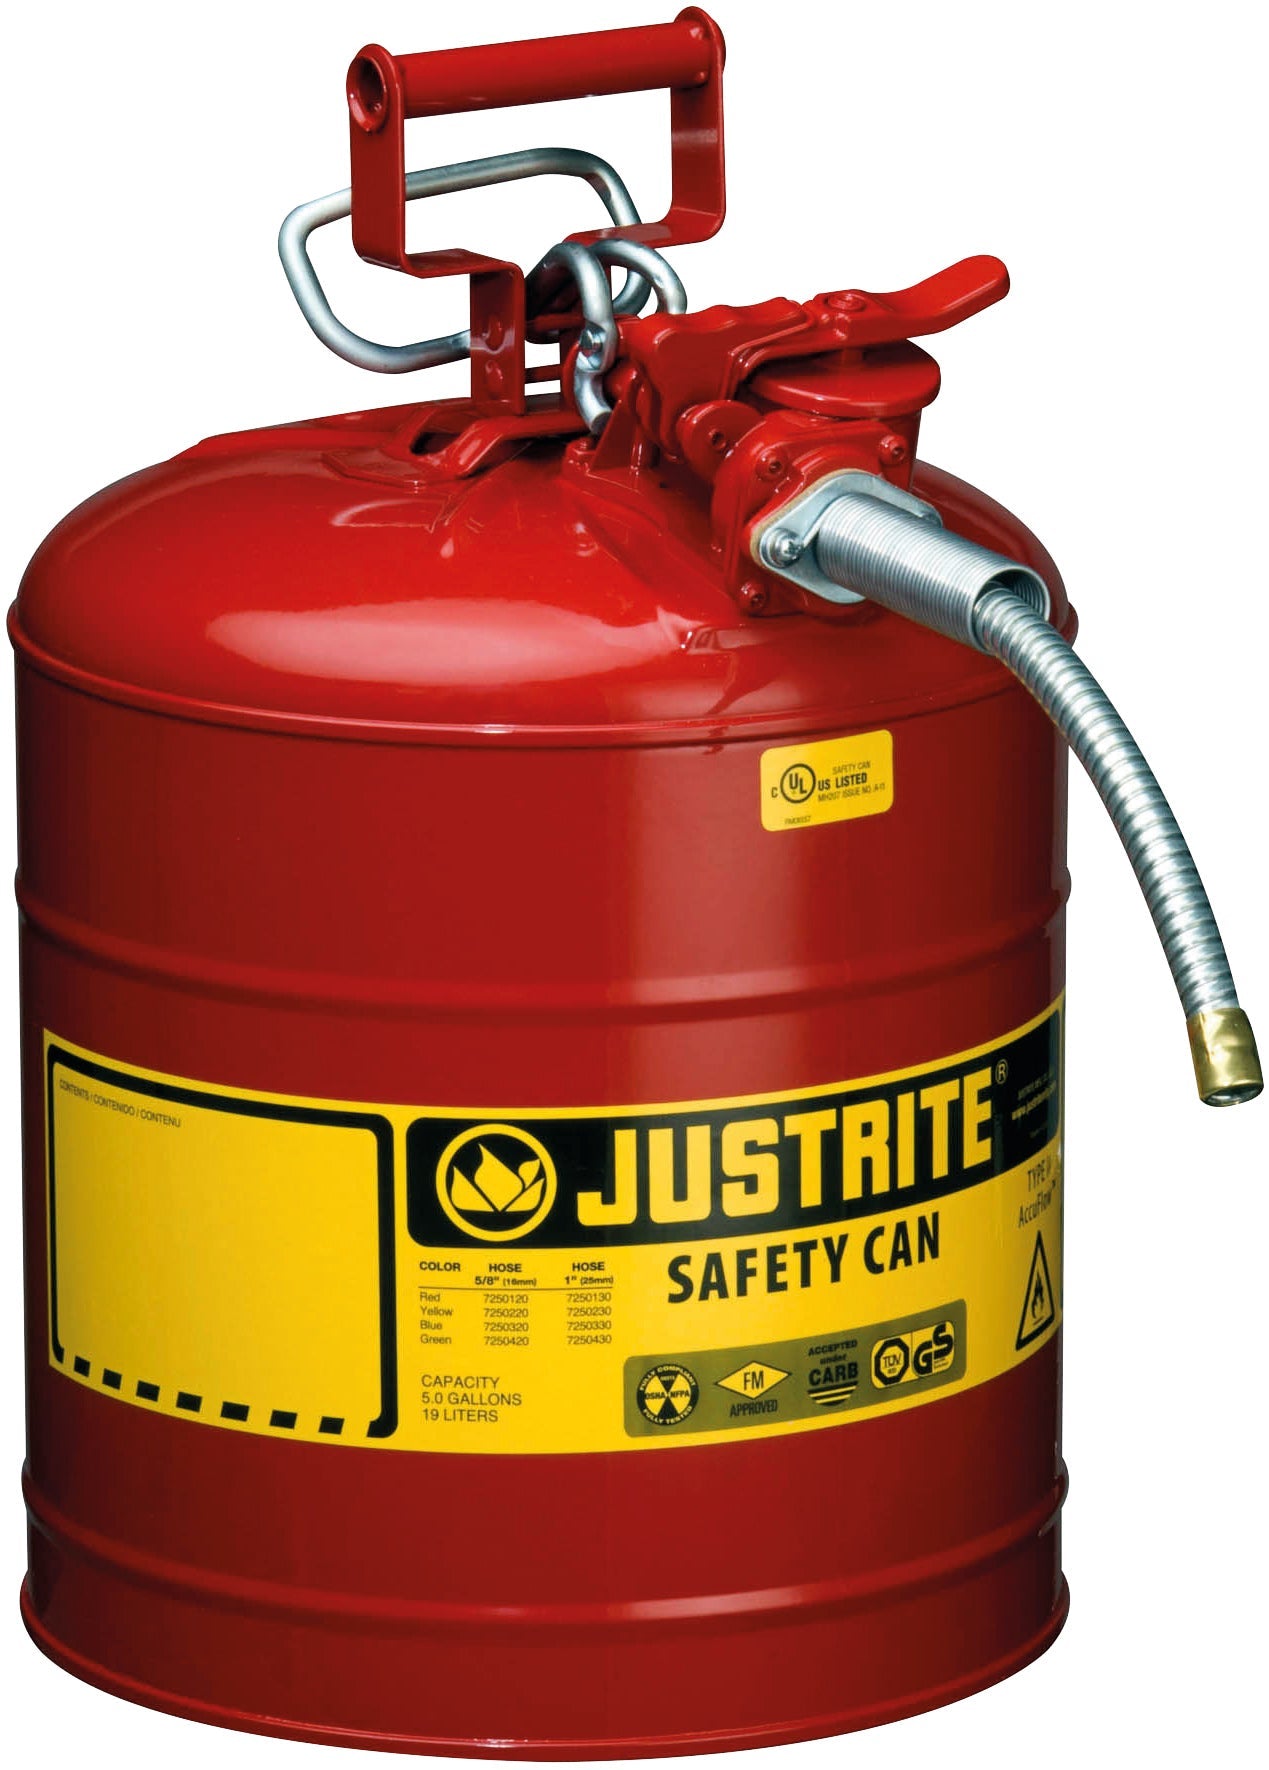 Sicherheitsbehälter Stahl pulverbeschichtet Rot, Inhalt: 19 Liter, Schlauch, Stahlblech pulverbeschichtet glatt